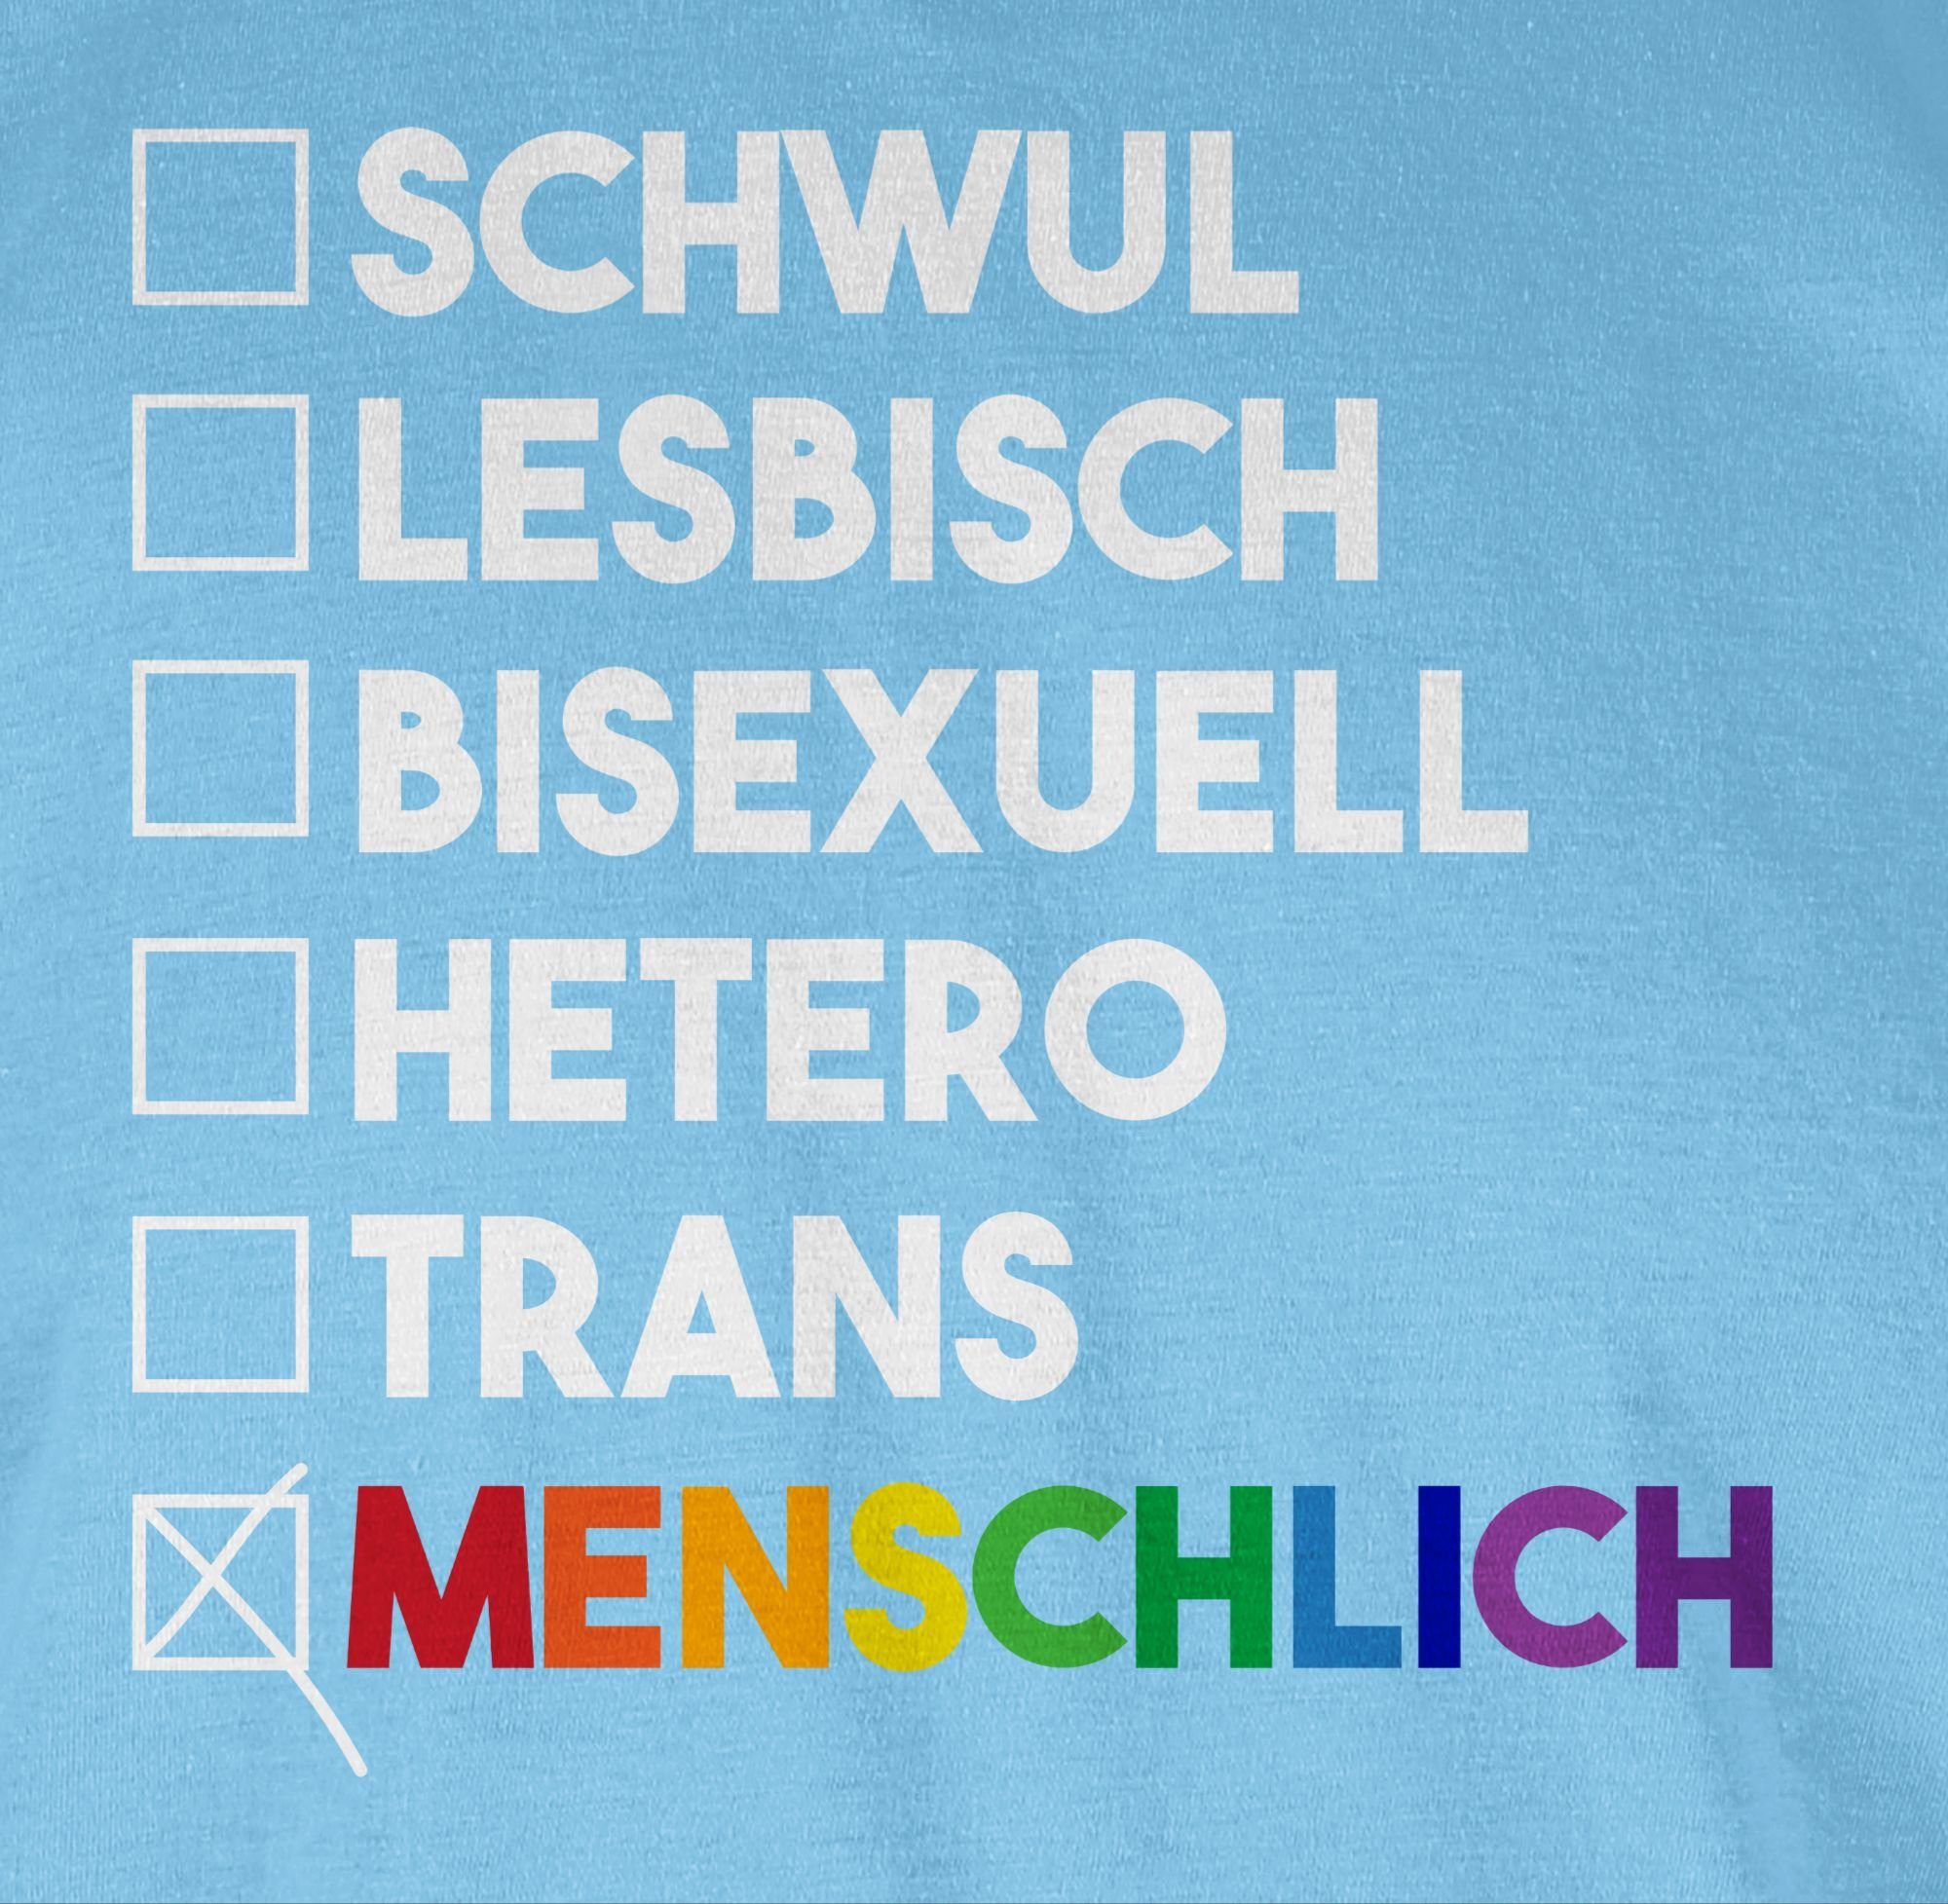 Shirtracer T-Shirt Wahl weiß - Pride Deine Menschlich - Regenbogen - LGBT - Kleidung Hellblau 03